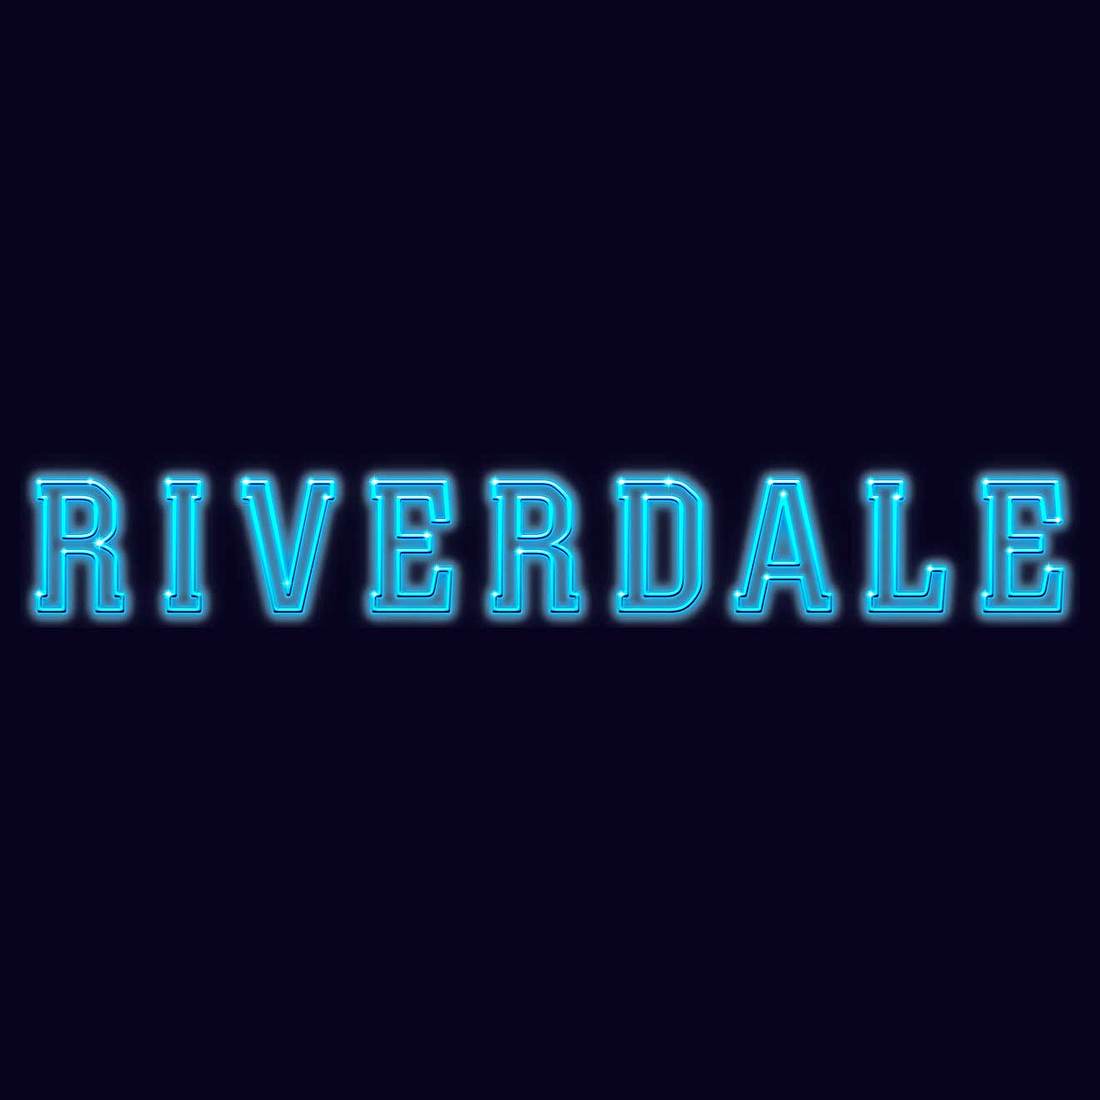 Keine neuen Riverdale-Folgen: Fette Pause für Staffel 5 geplant!